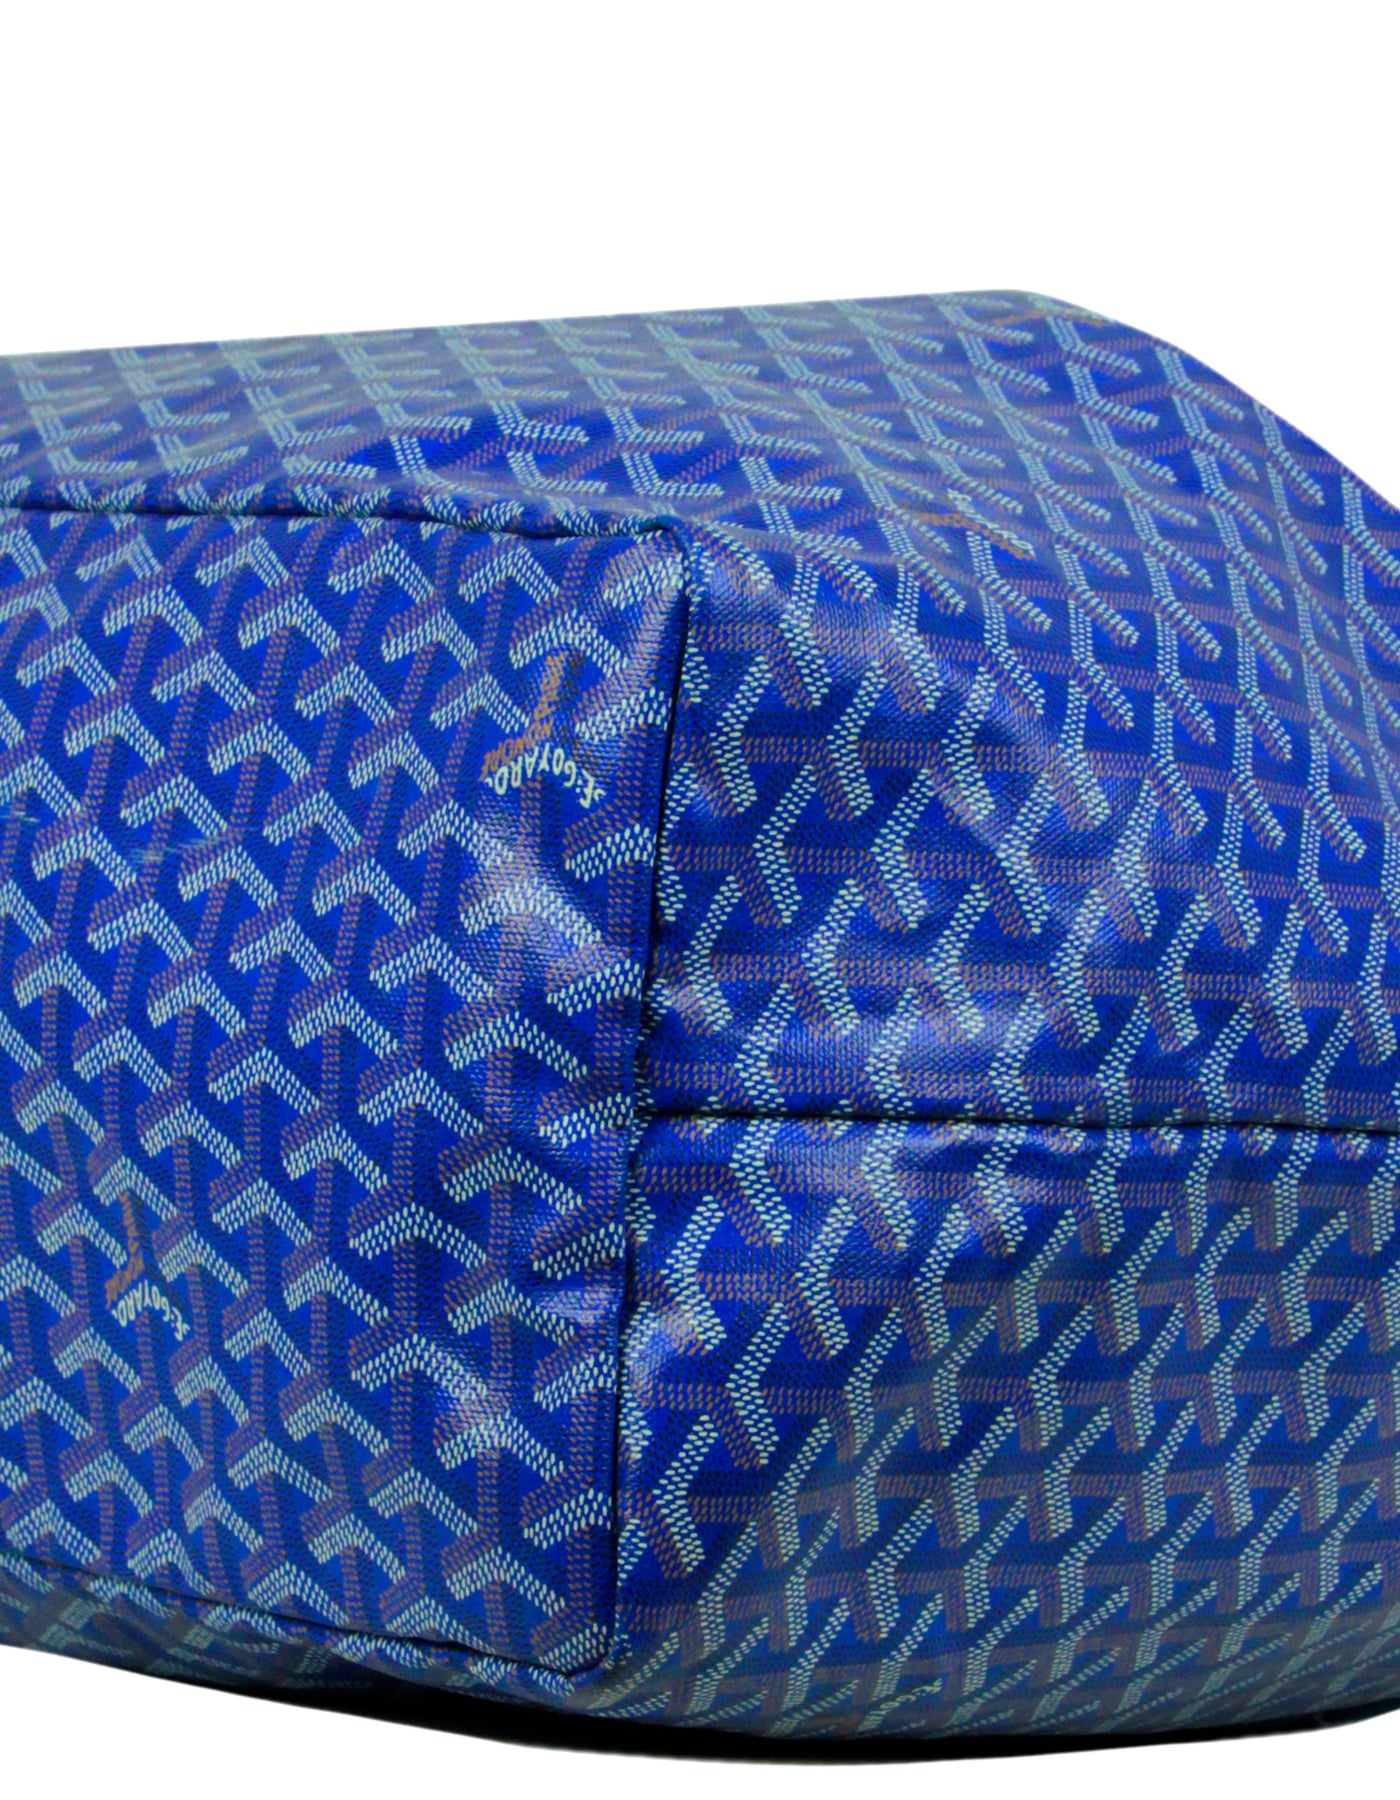 Goyard Goyardine St. Louis GM w/ Pouch - Blue Totes, Handbags - GOY38433